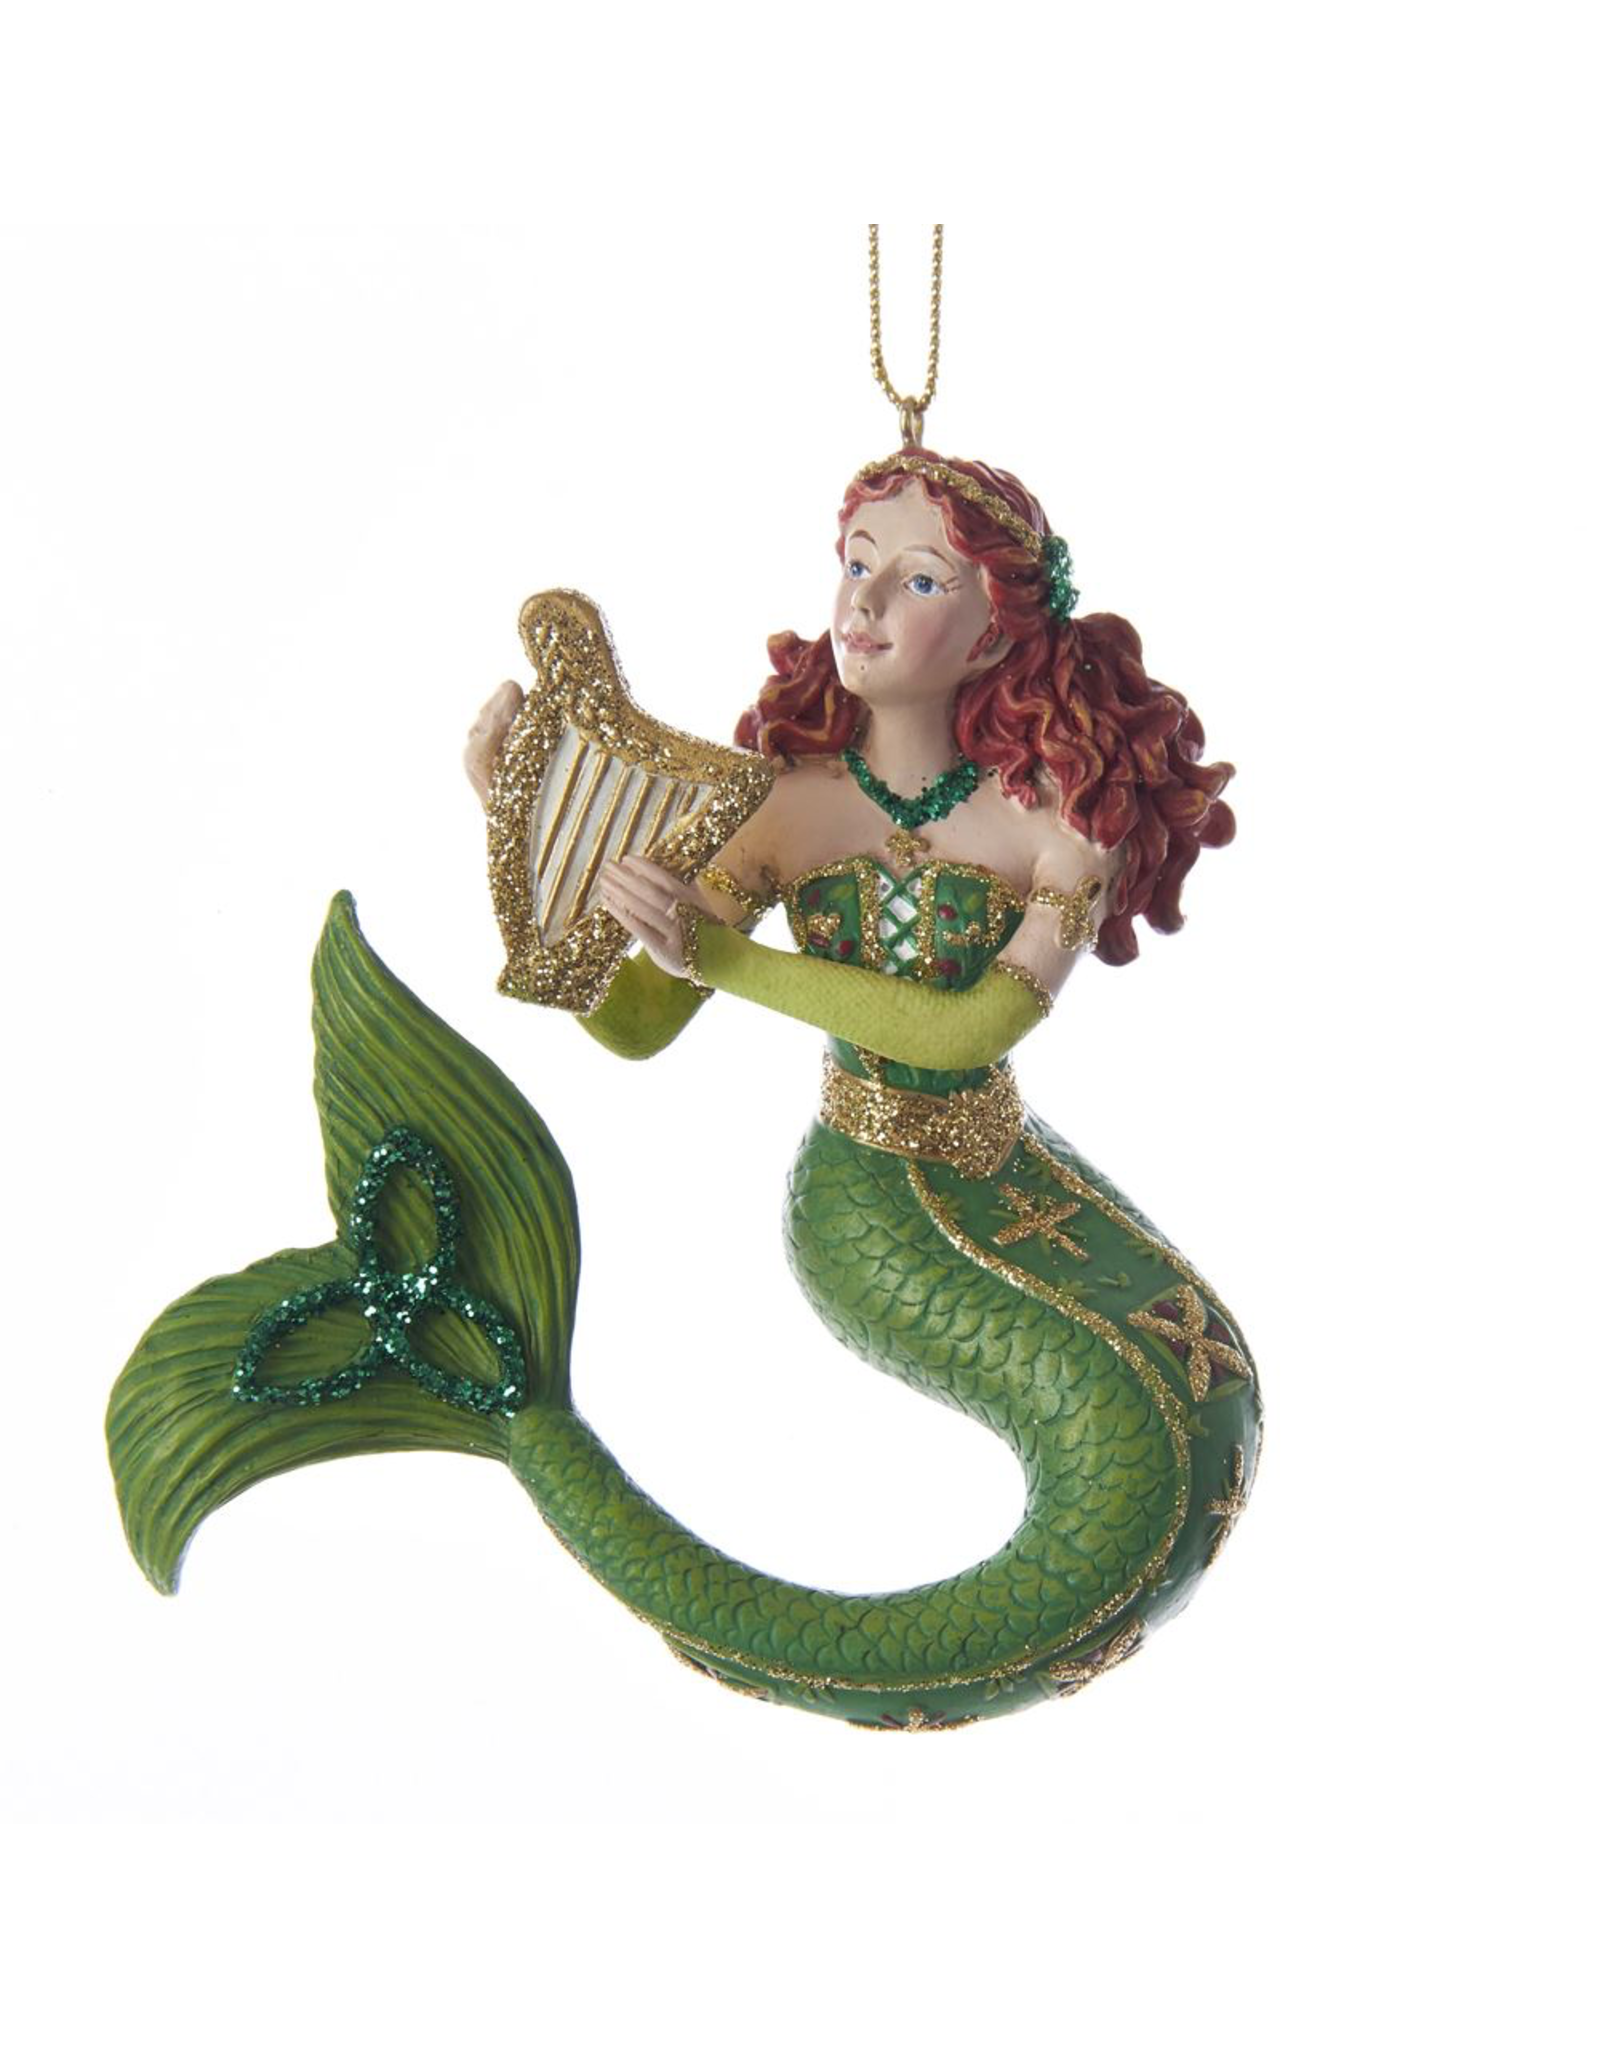 Kurt Adler Ireland International Mermaids Ornament 6" Irish Mermaid